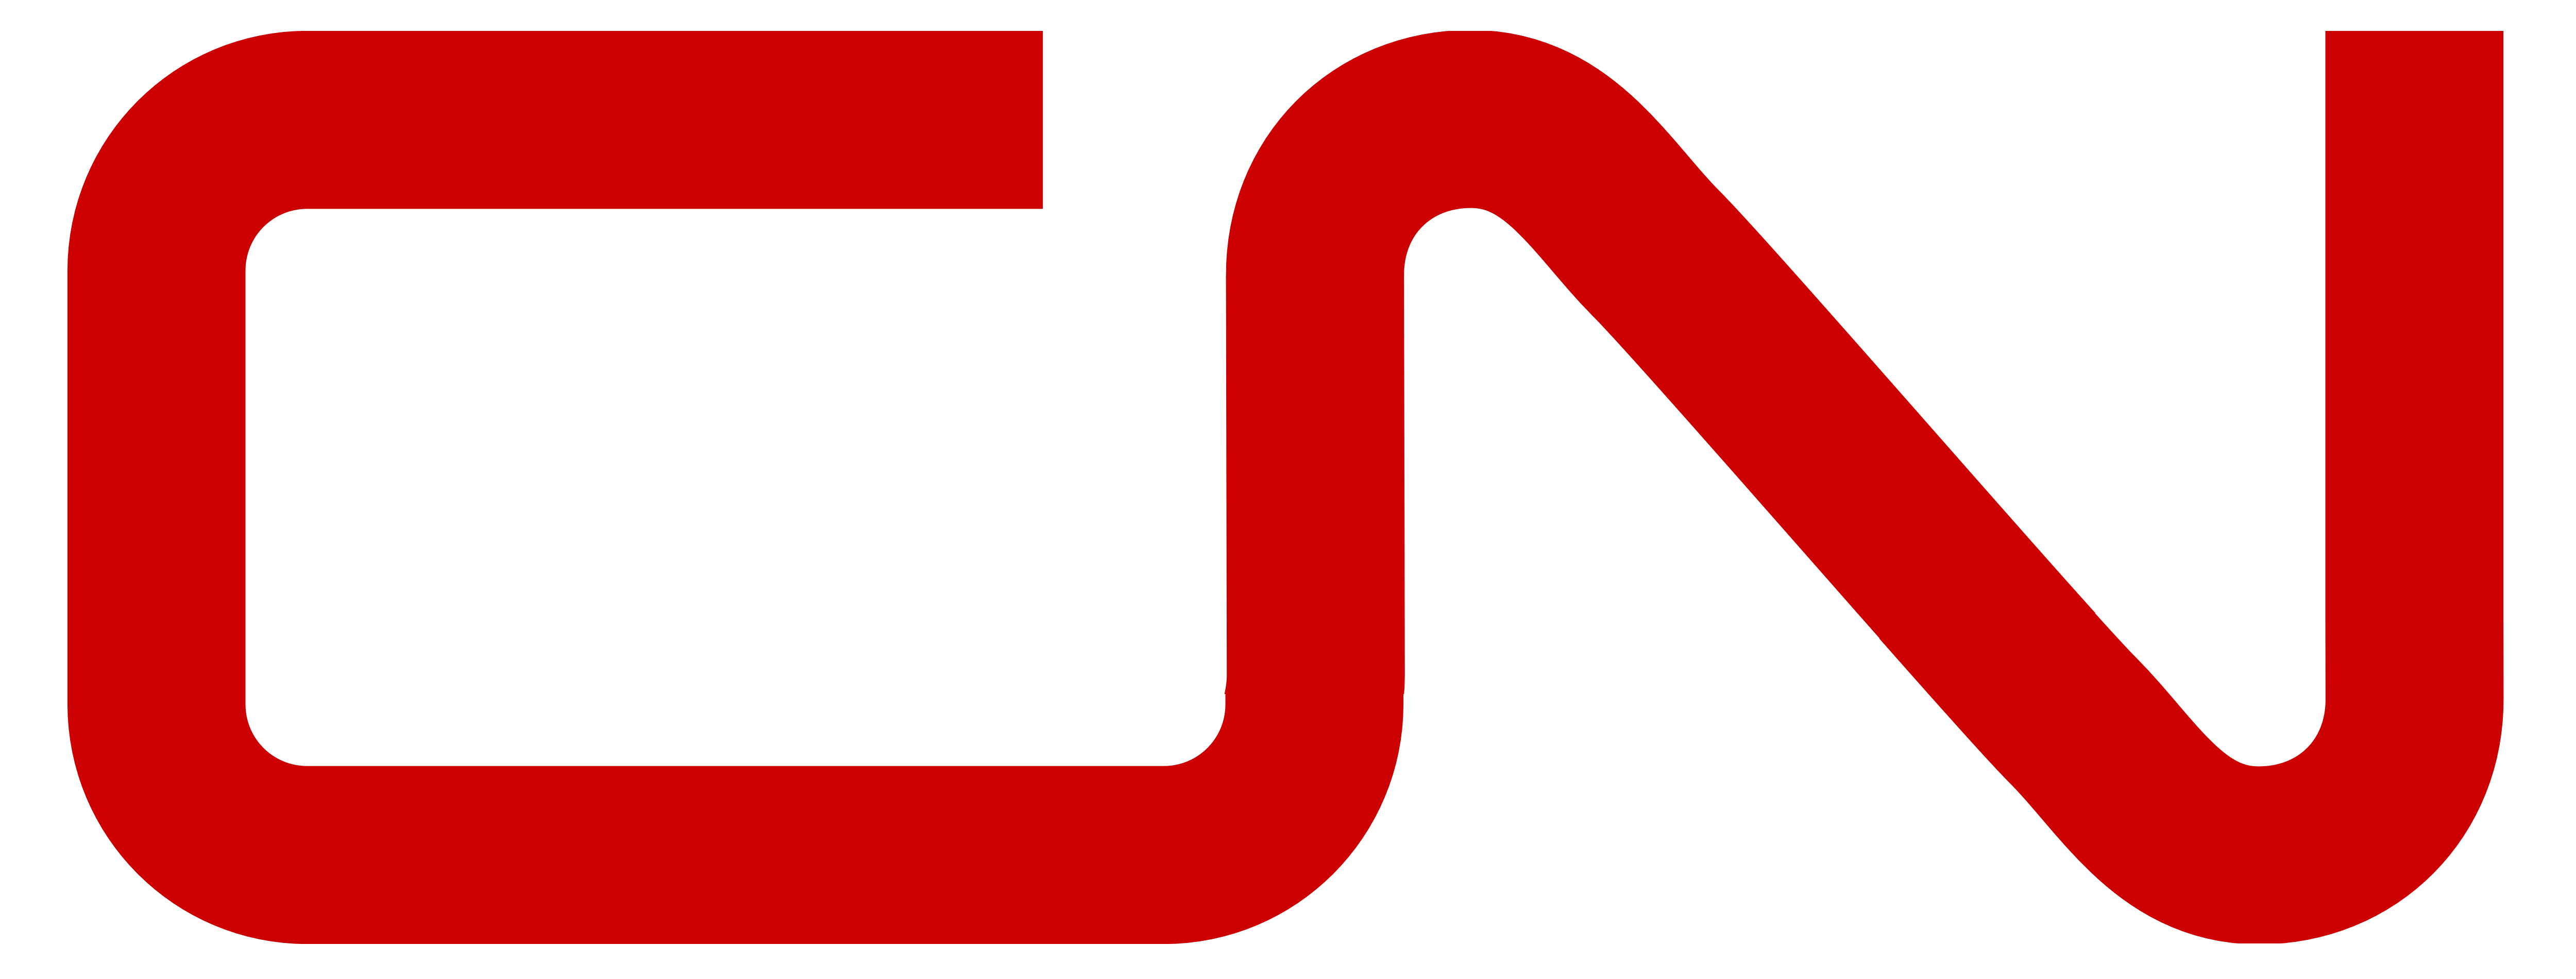 Cn Logos Download